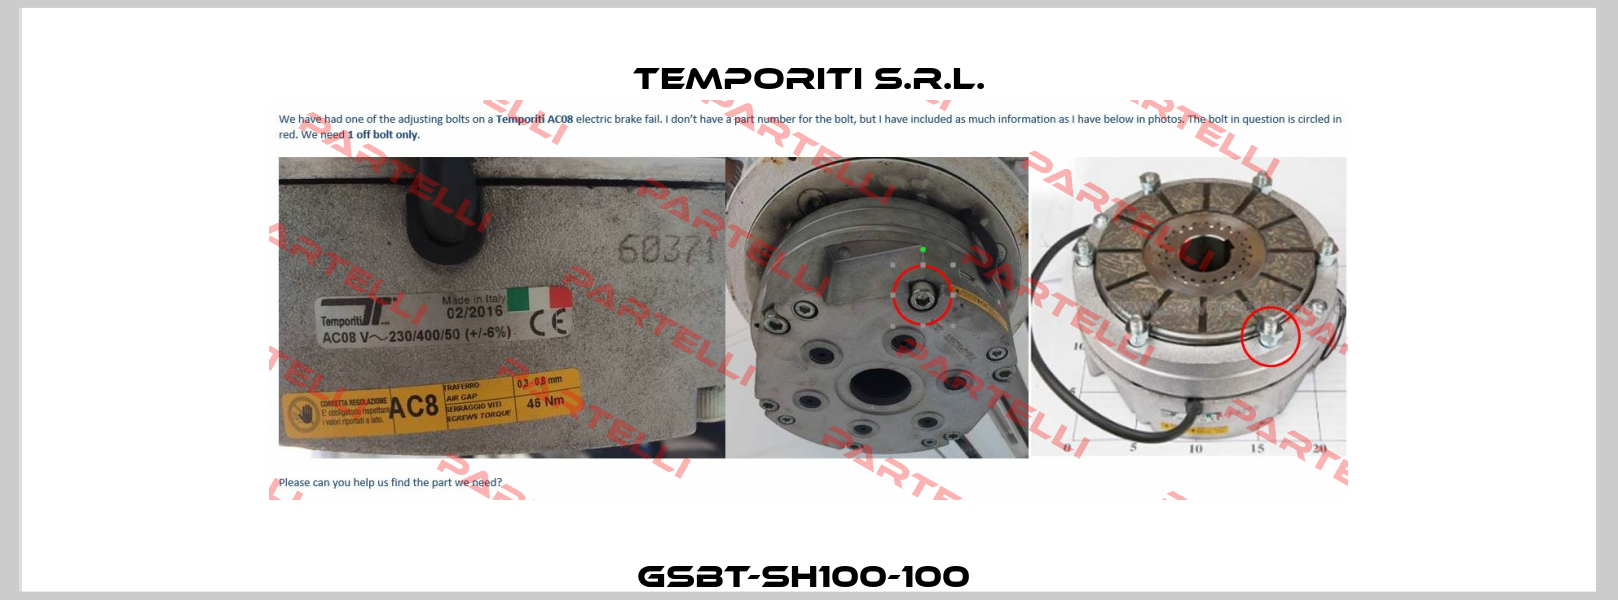 GSBT-SH100-100  Temporiti s.r.l.